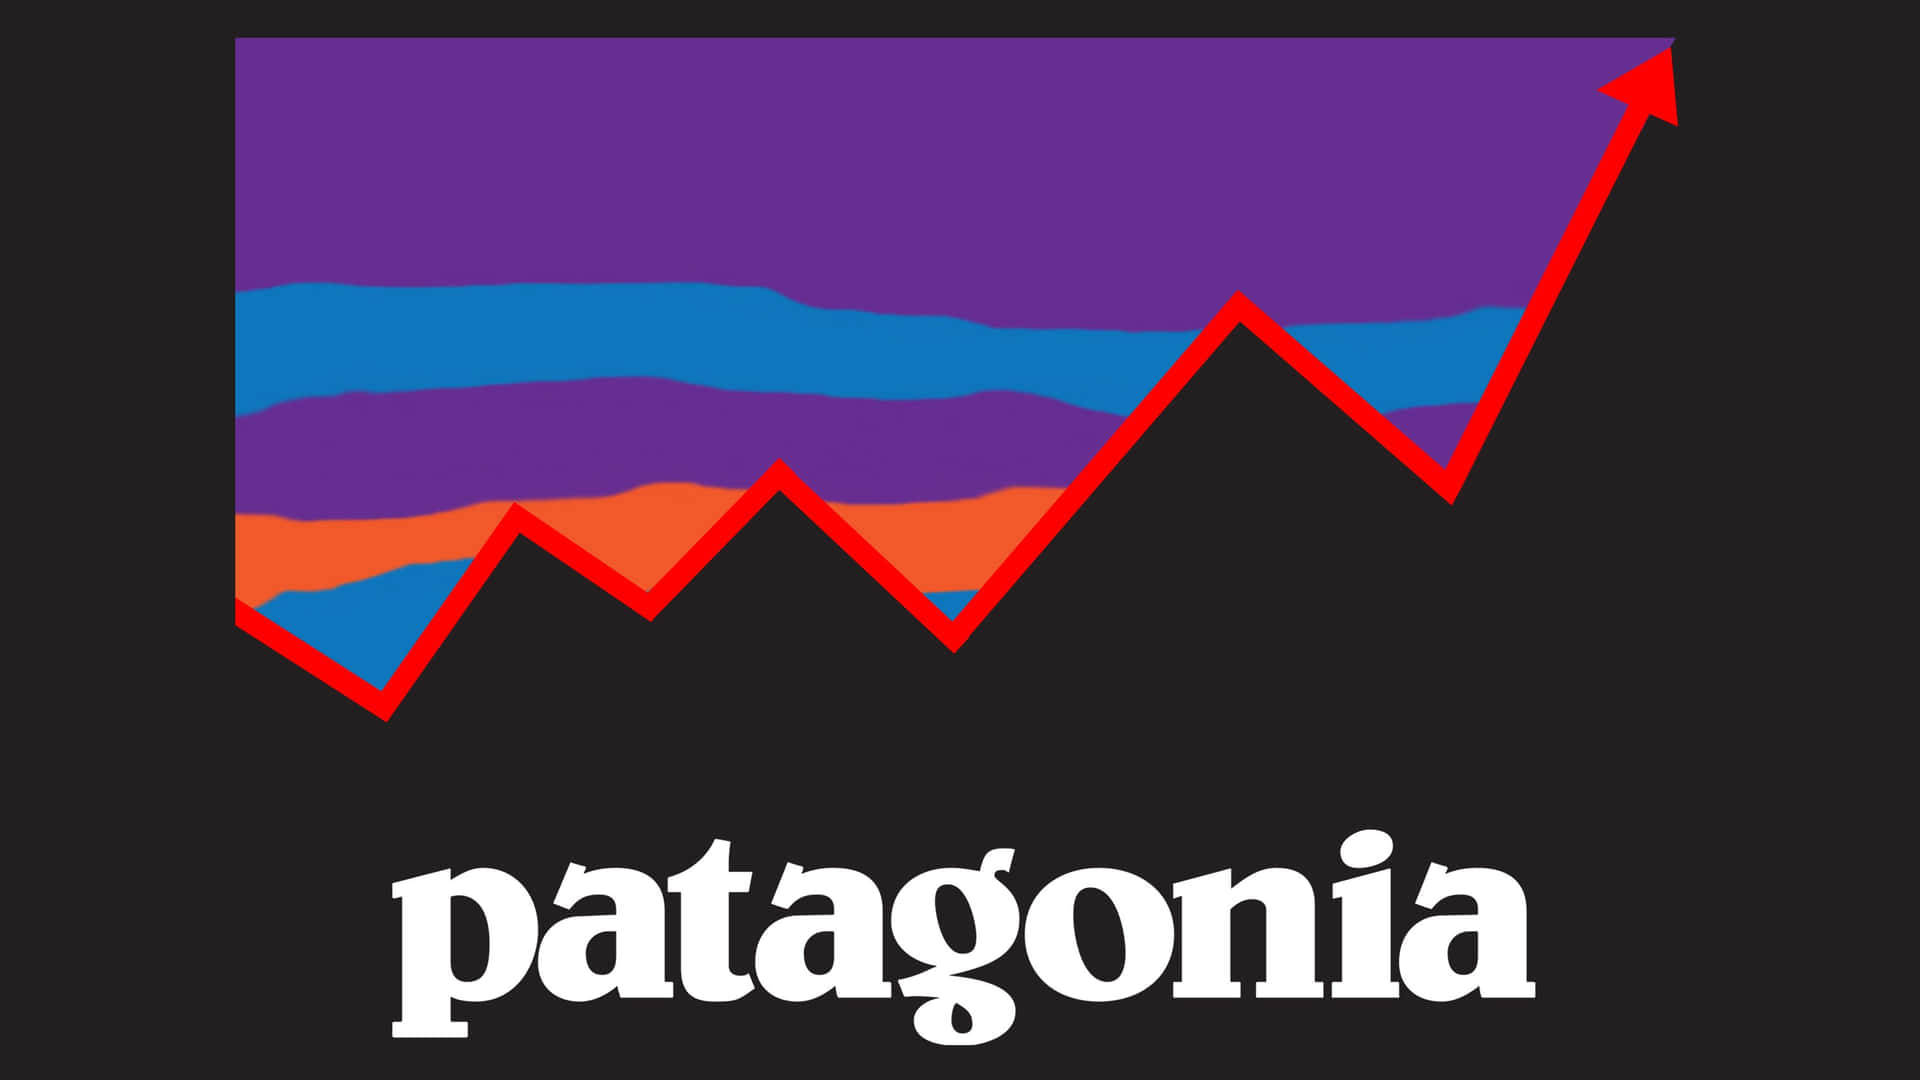 Förundradig Över Underverken I Patagoniens Underbara Värld.